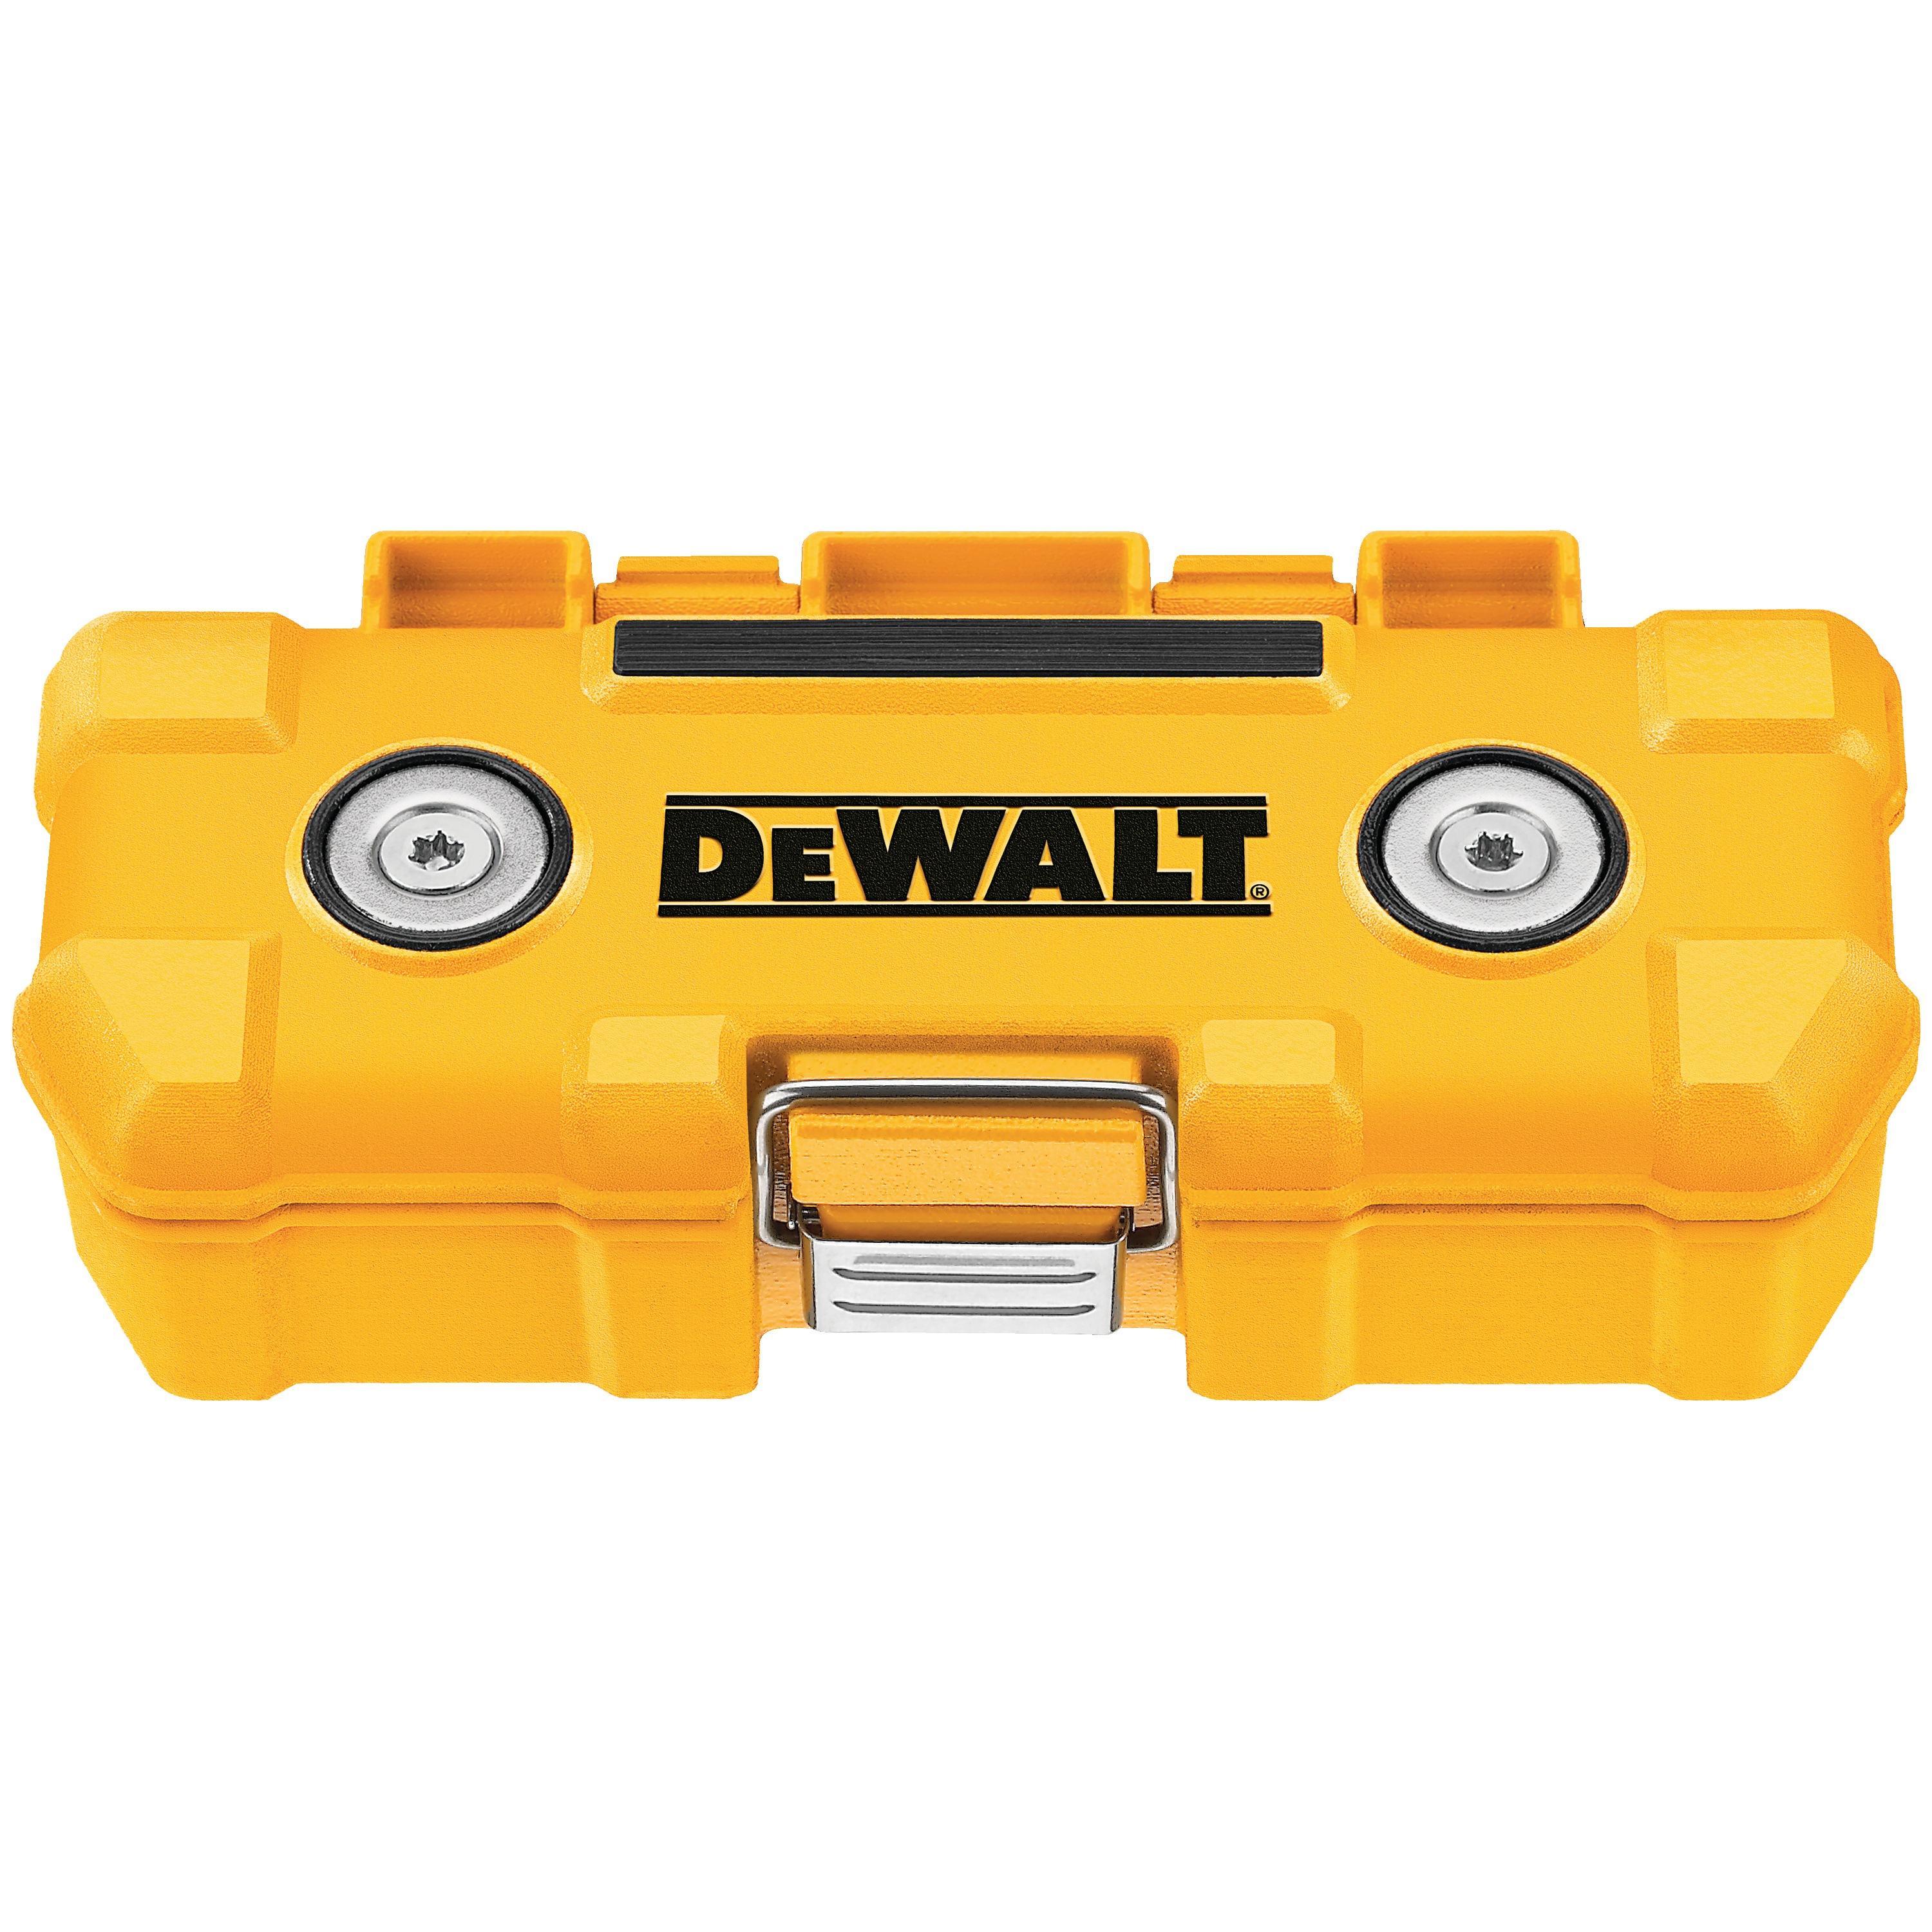 DEWALT - 15 Pc Magnetic ToughCase - DWMTC15